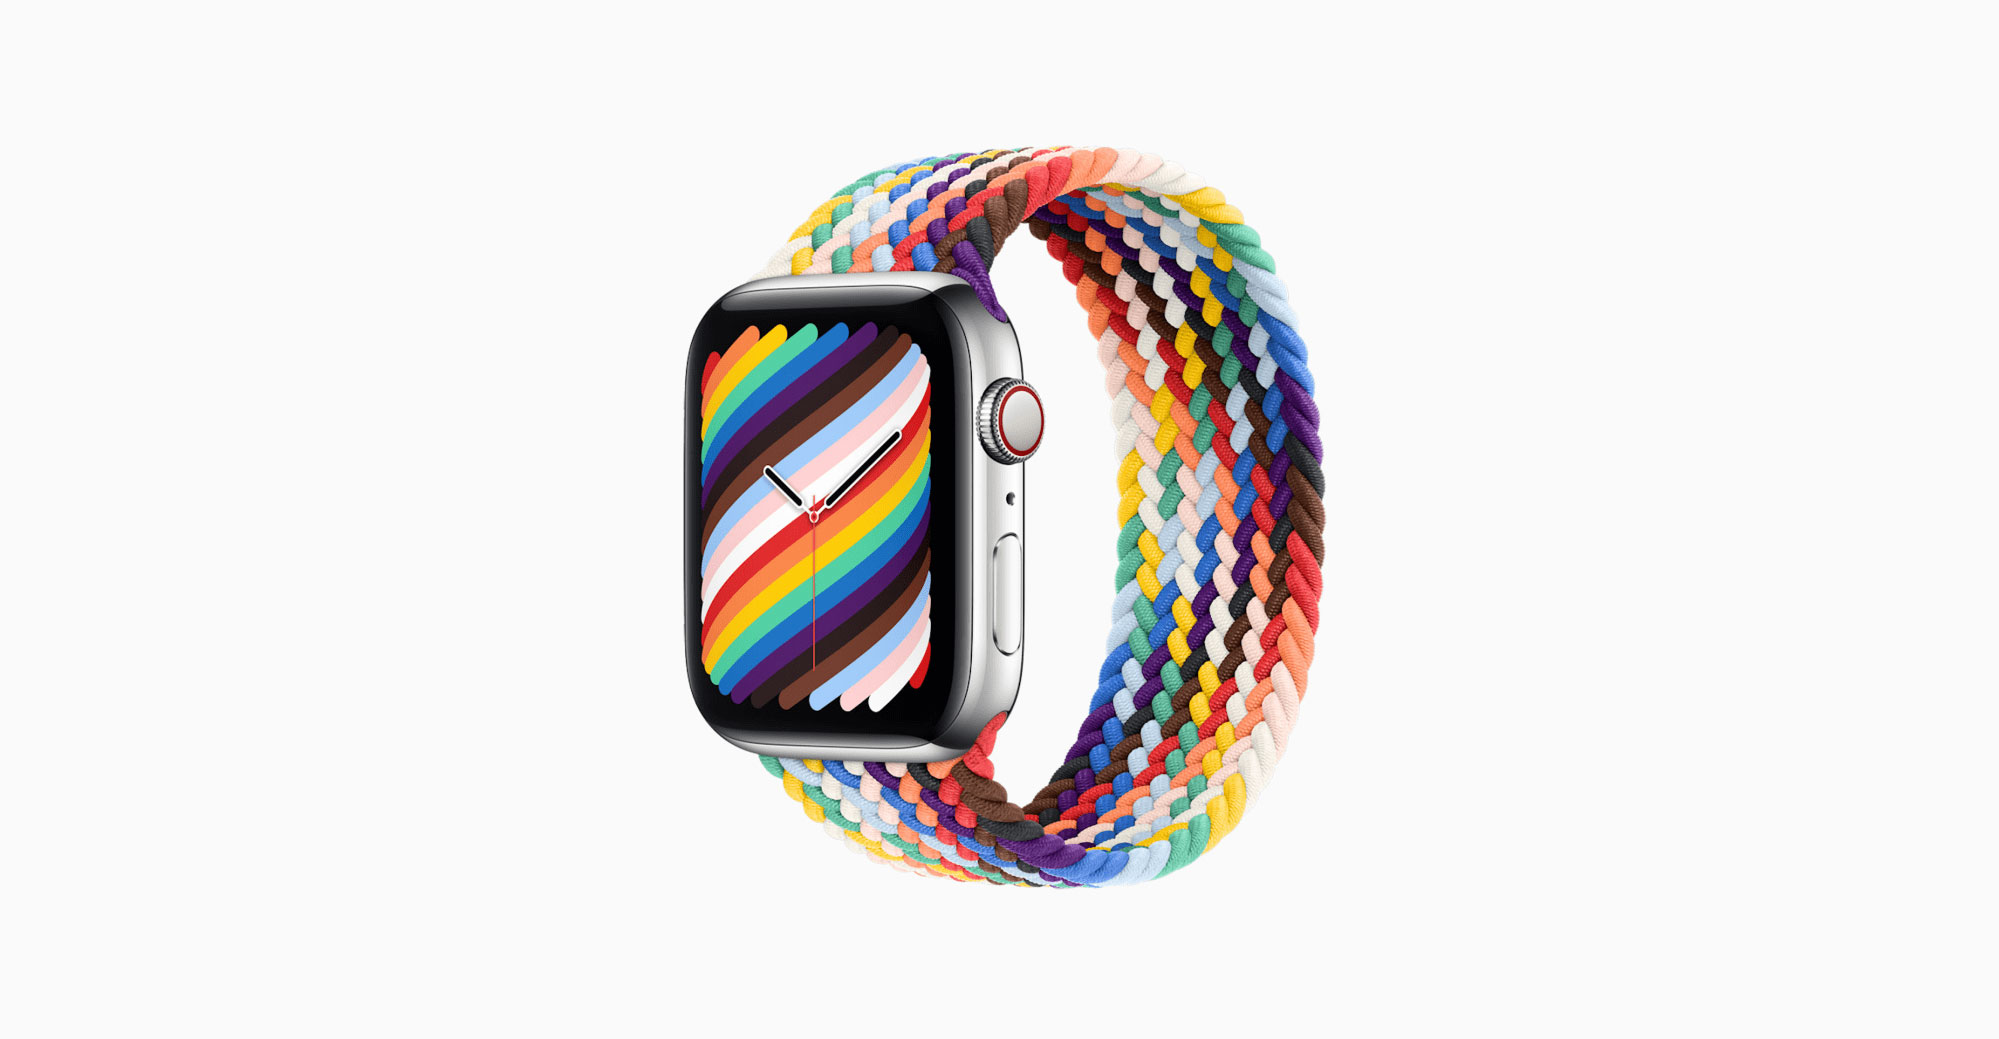 دو بند و Watch Face جدید برای اپل واچ برای حمایت از گرایش های جنسی متفاوت (Pride Month)